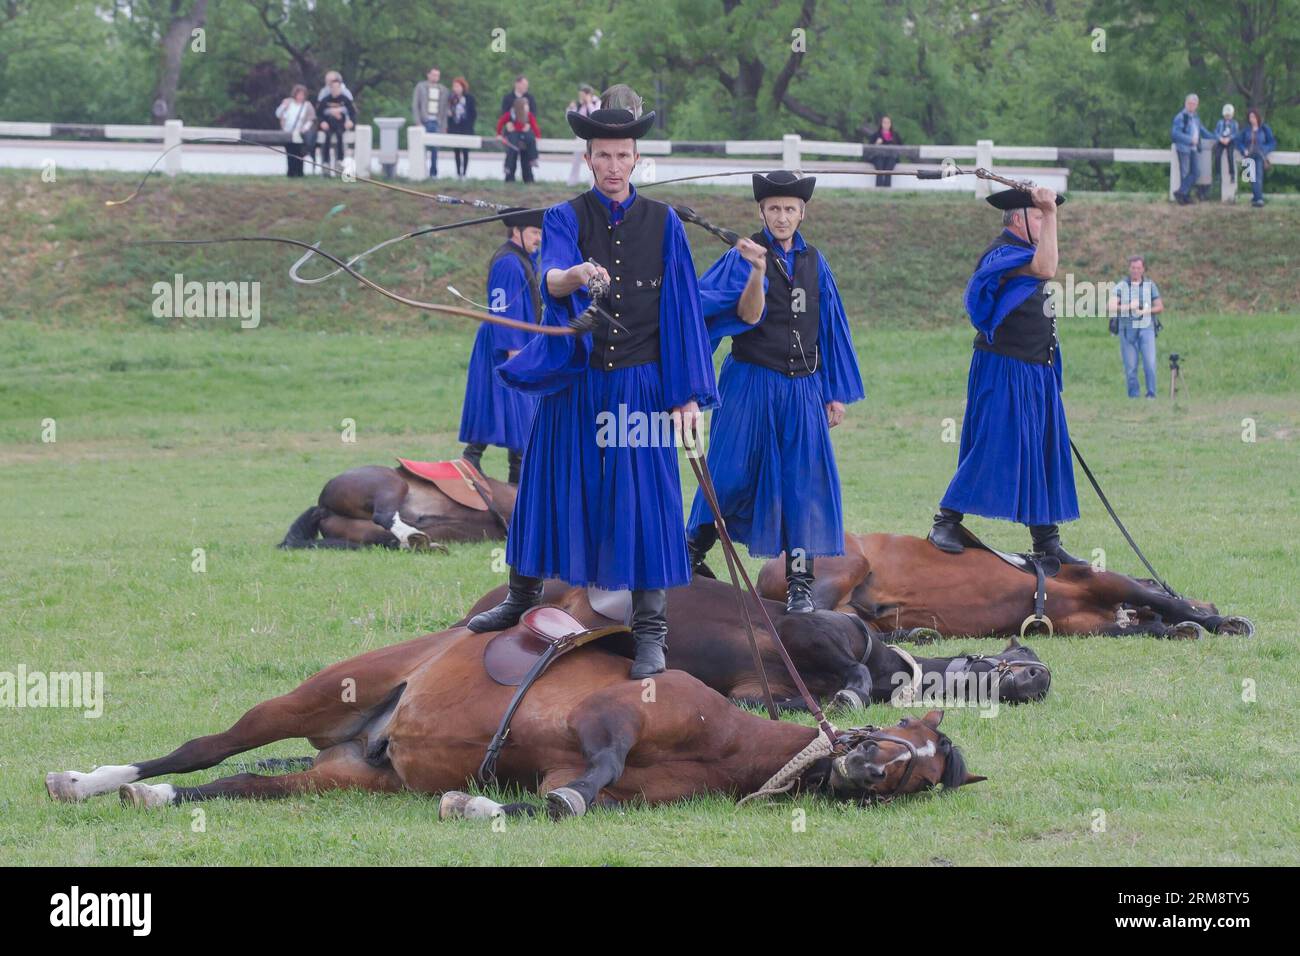 (140426) -- HORTOBAGY, 26 aprile 2014 (Xinhua) -- i cavalieri in piedi sui cavalli si esibiscono con le fruste durante una celebrazione che segna l'inizio di una nuova stagione di pascolo nelle grandi Pianure ungheresi a Hortobagy, Ungheria orientale, il 26 aprile 2014. (Xinhua/Attila Volgyi) UNGHERIA-HORTOBAGY-FOLK TRADITION-NEW PASCOLO STAGIONE PUBLICATIONxNOTxINxCHN Hortobagy aprile 26 2014 XINHUA Horsemen Thing ON Horsemen Hortobagy Hortobagy Hortobagy Ungheria Orientale IL 26 2014 aprile XINHUA Attila VOLGYI Hungary Hortobagy Folk Tradition ne Foto Stock